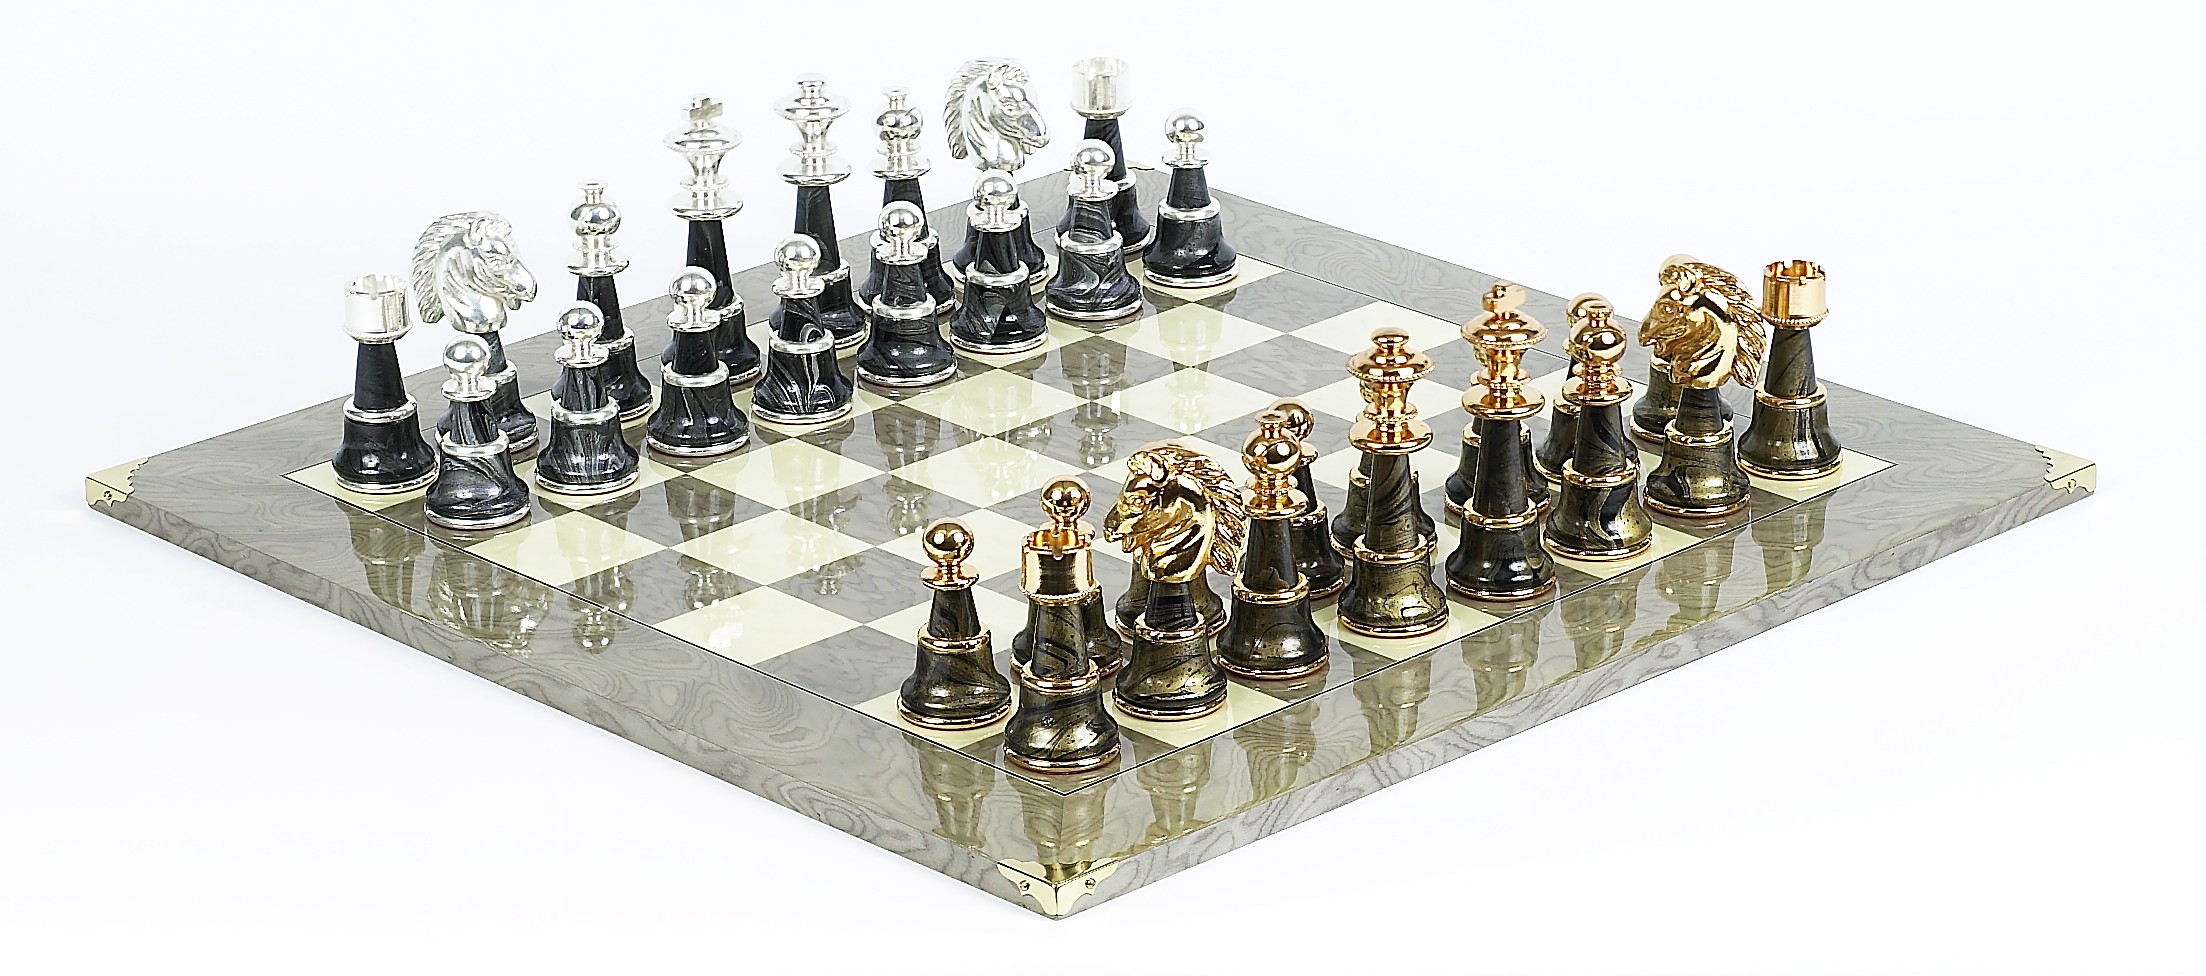 Magnificent Chessmen & Superior Board